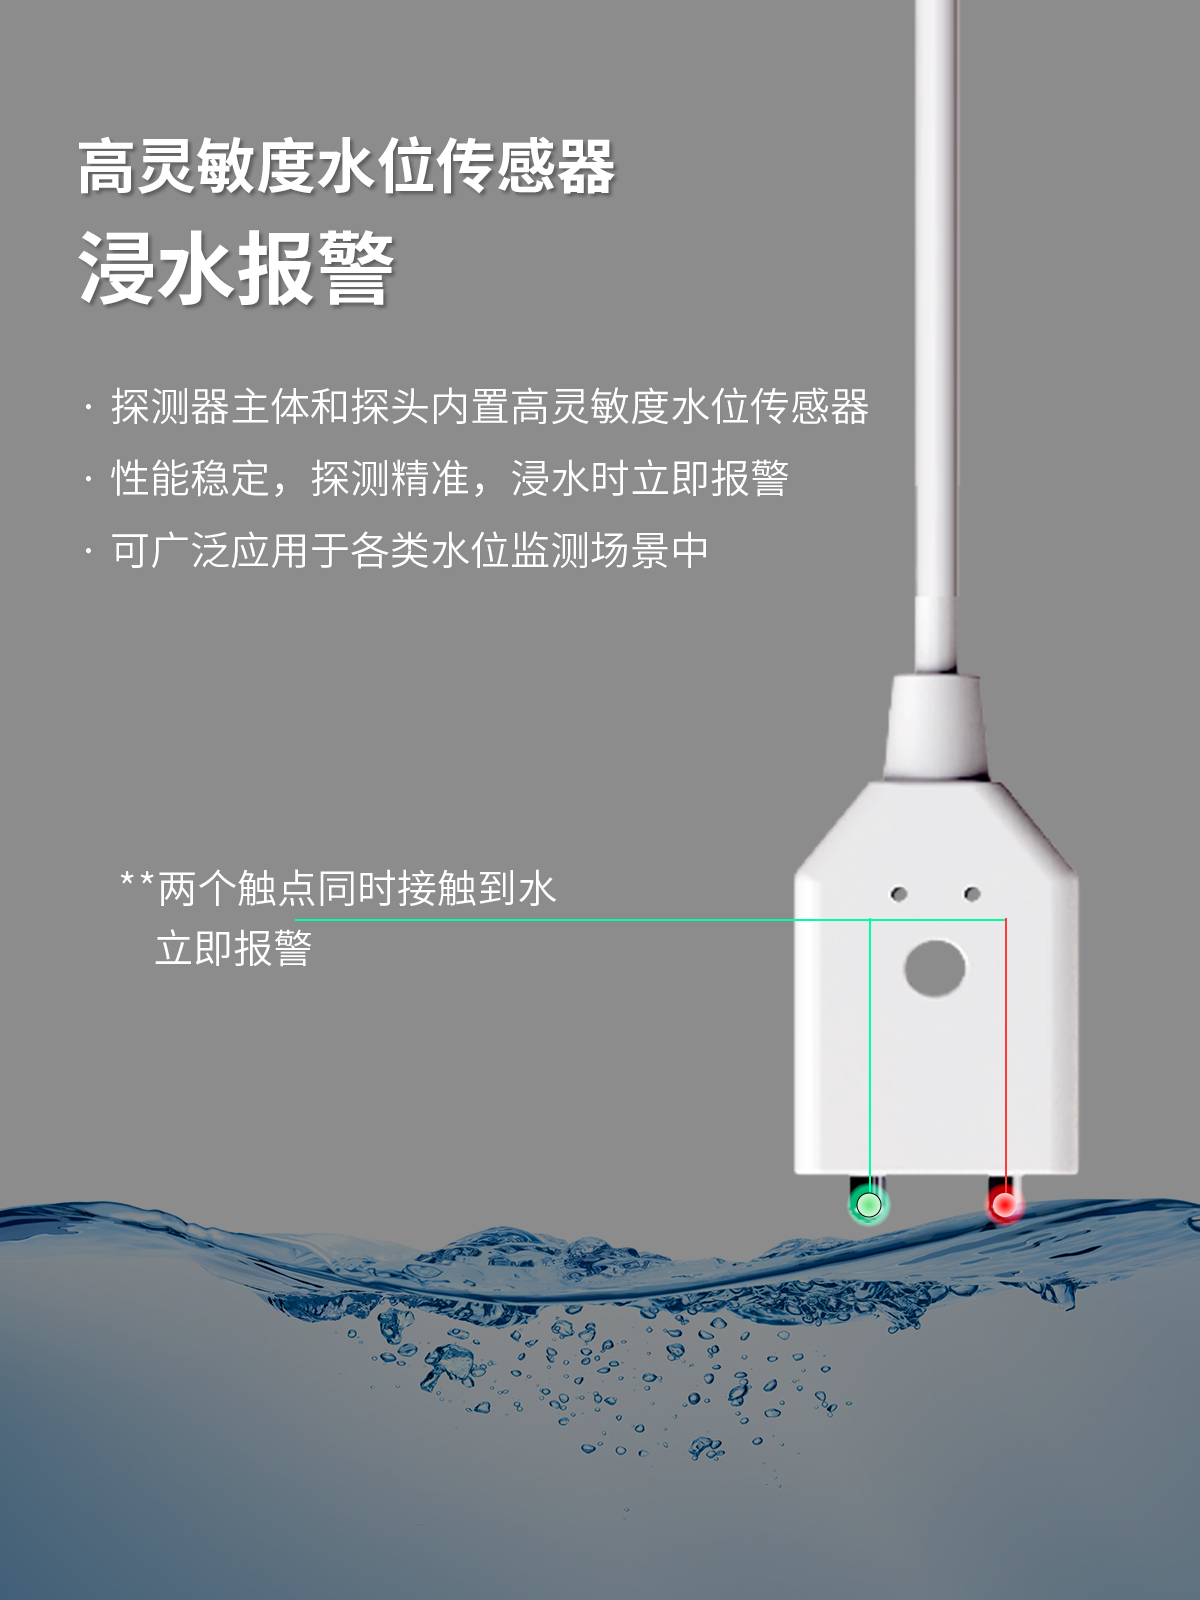 艾礼安NB-IoT智能水浸探测器